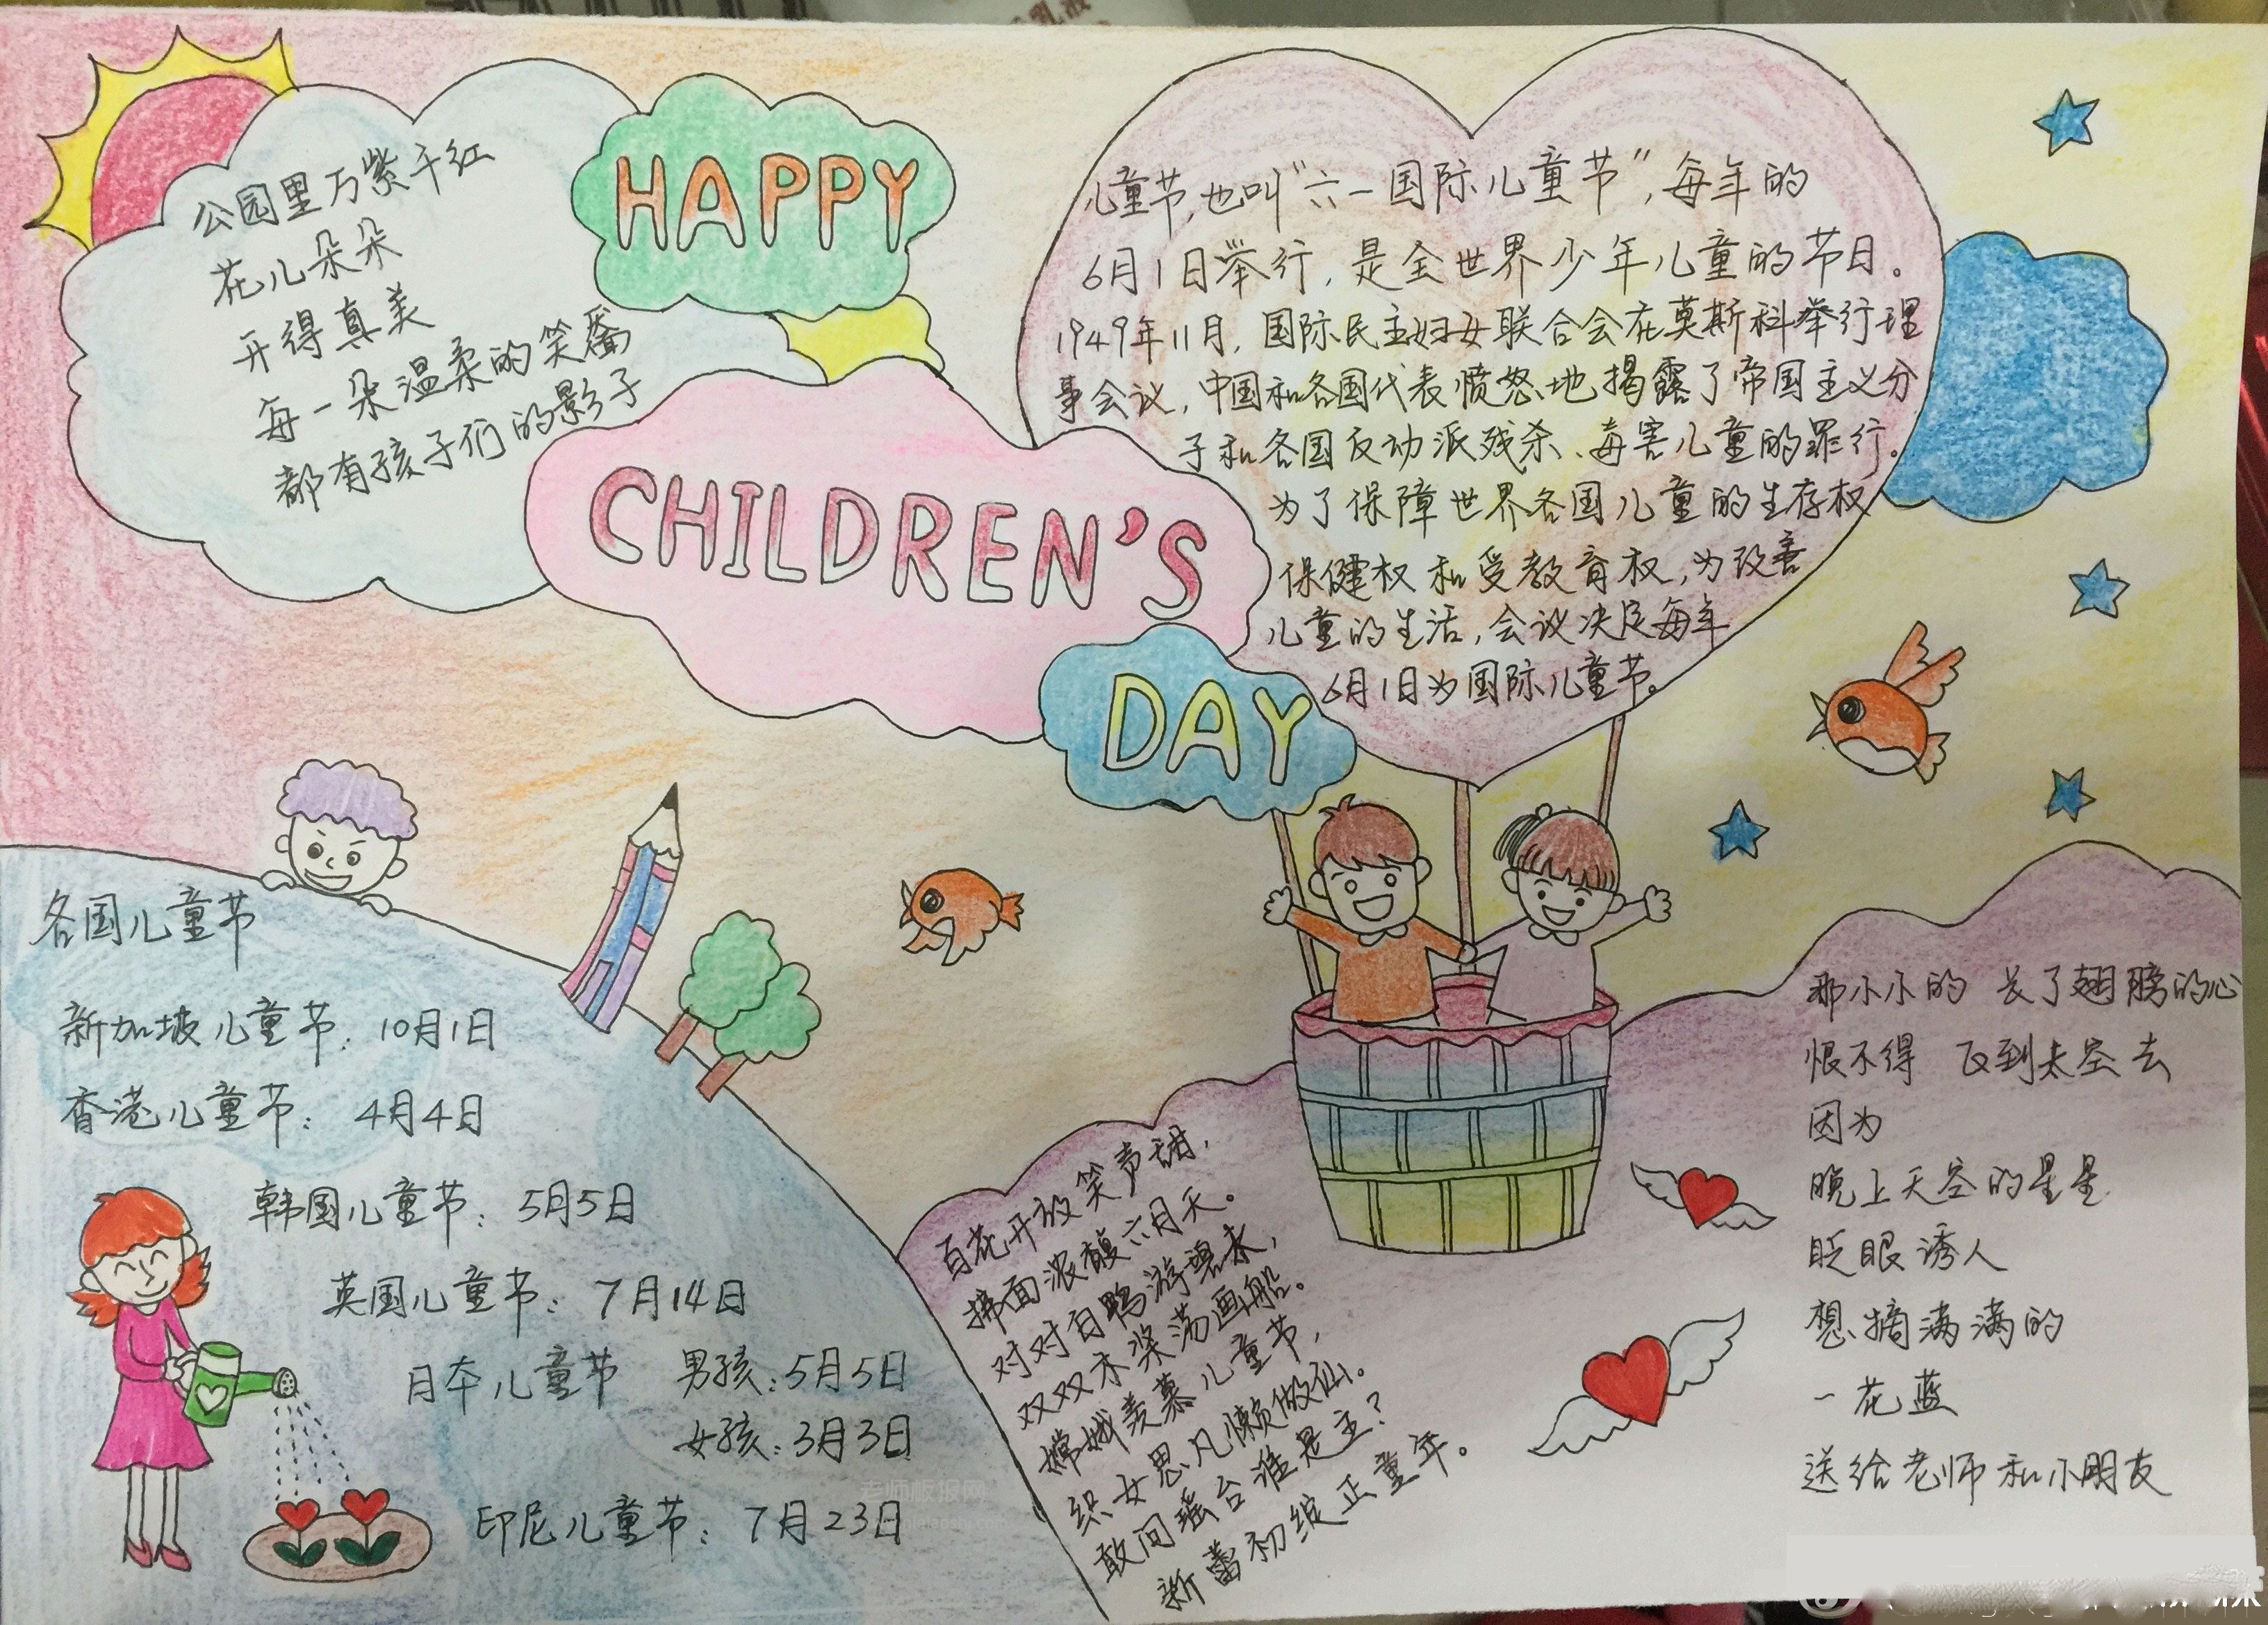 儿童节手抄报:Happy Children's Day